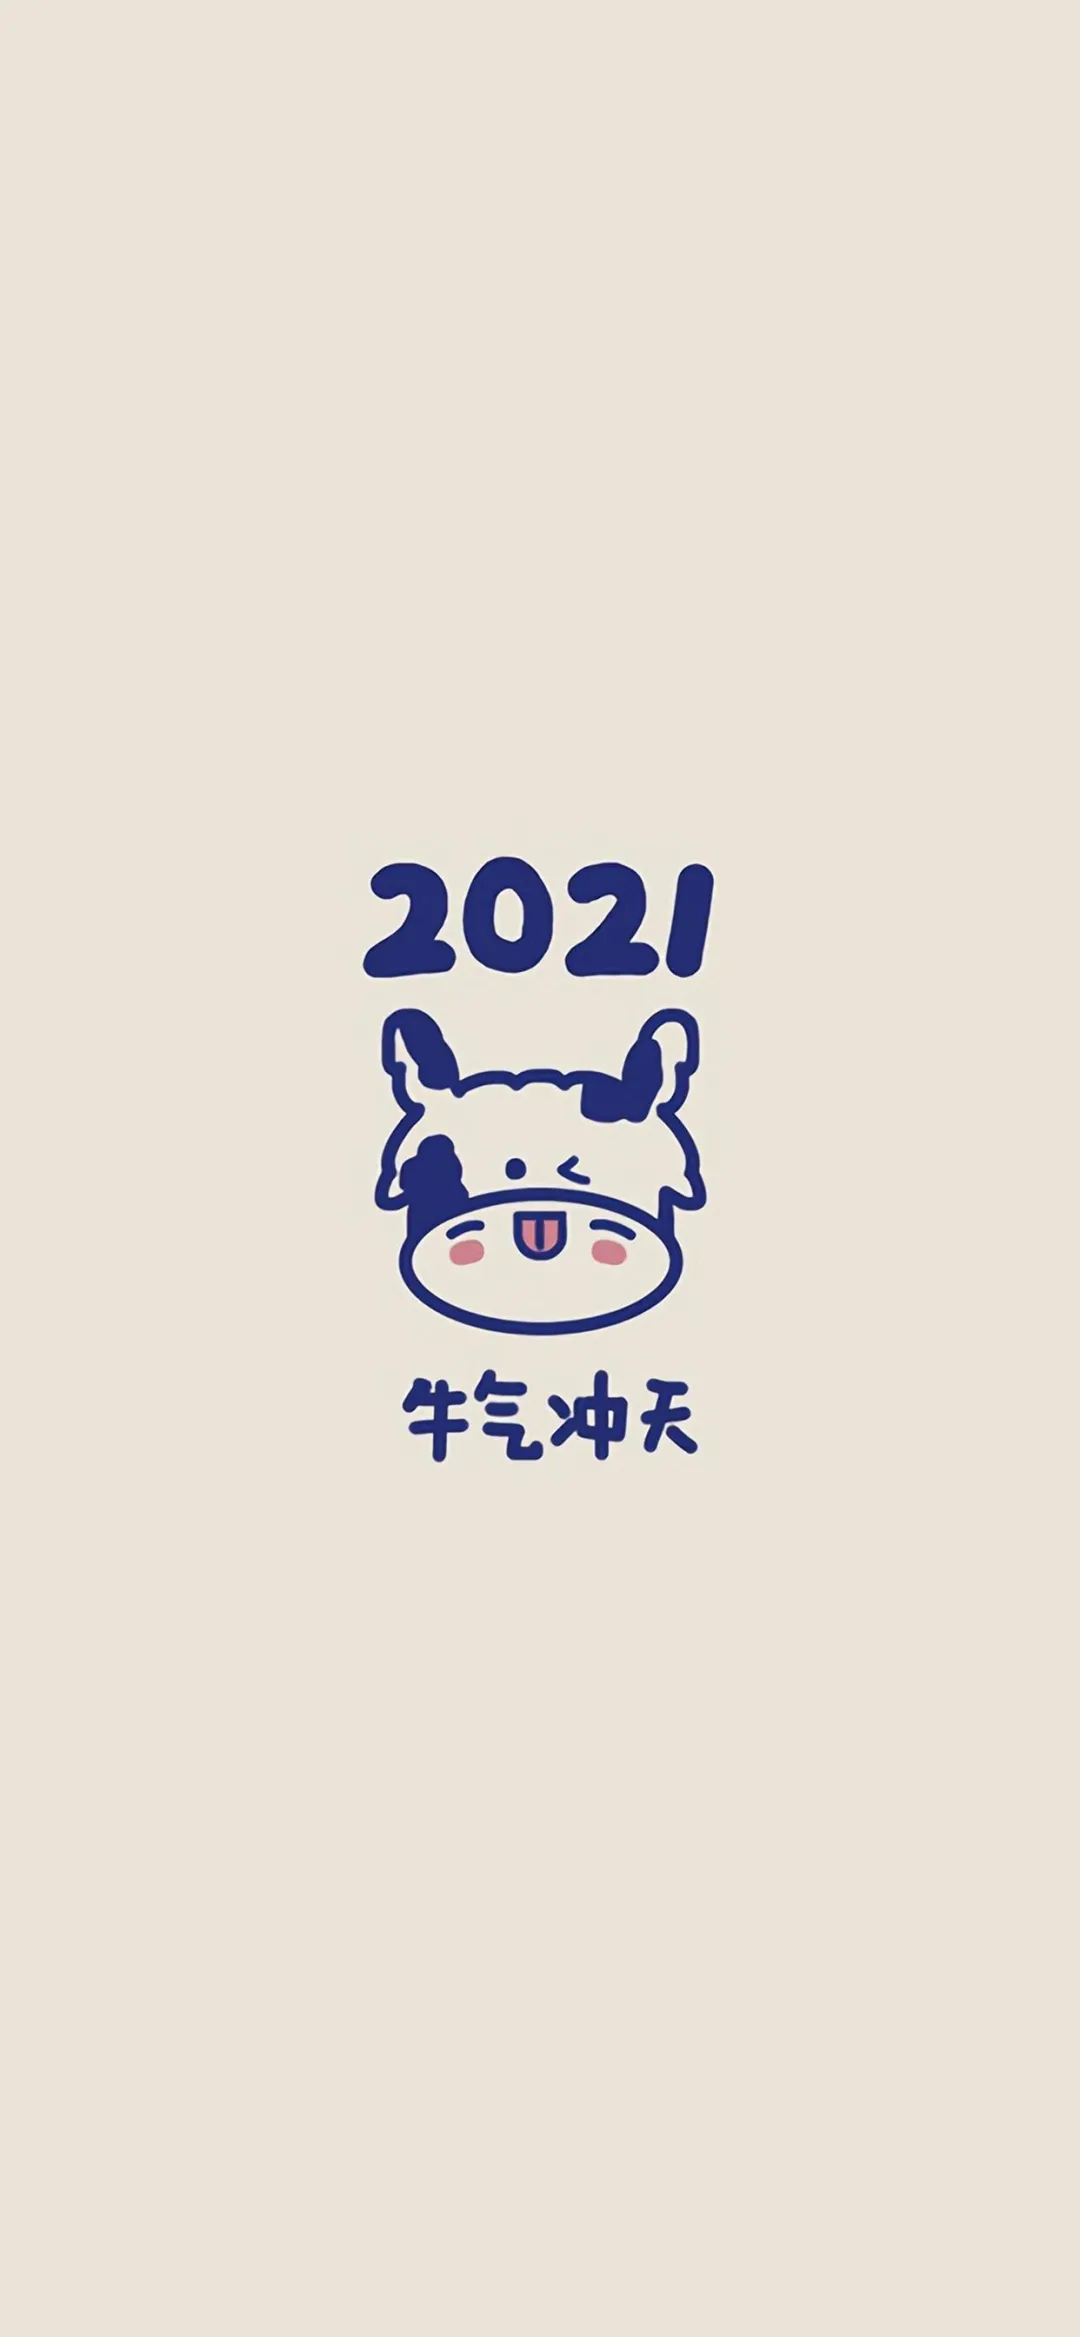 2021牛年除夕跨年文案,附配套朋友圈背景和手机壁纸!